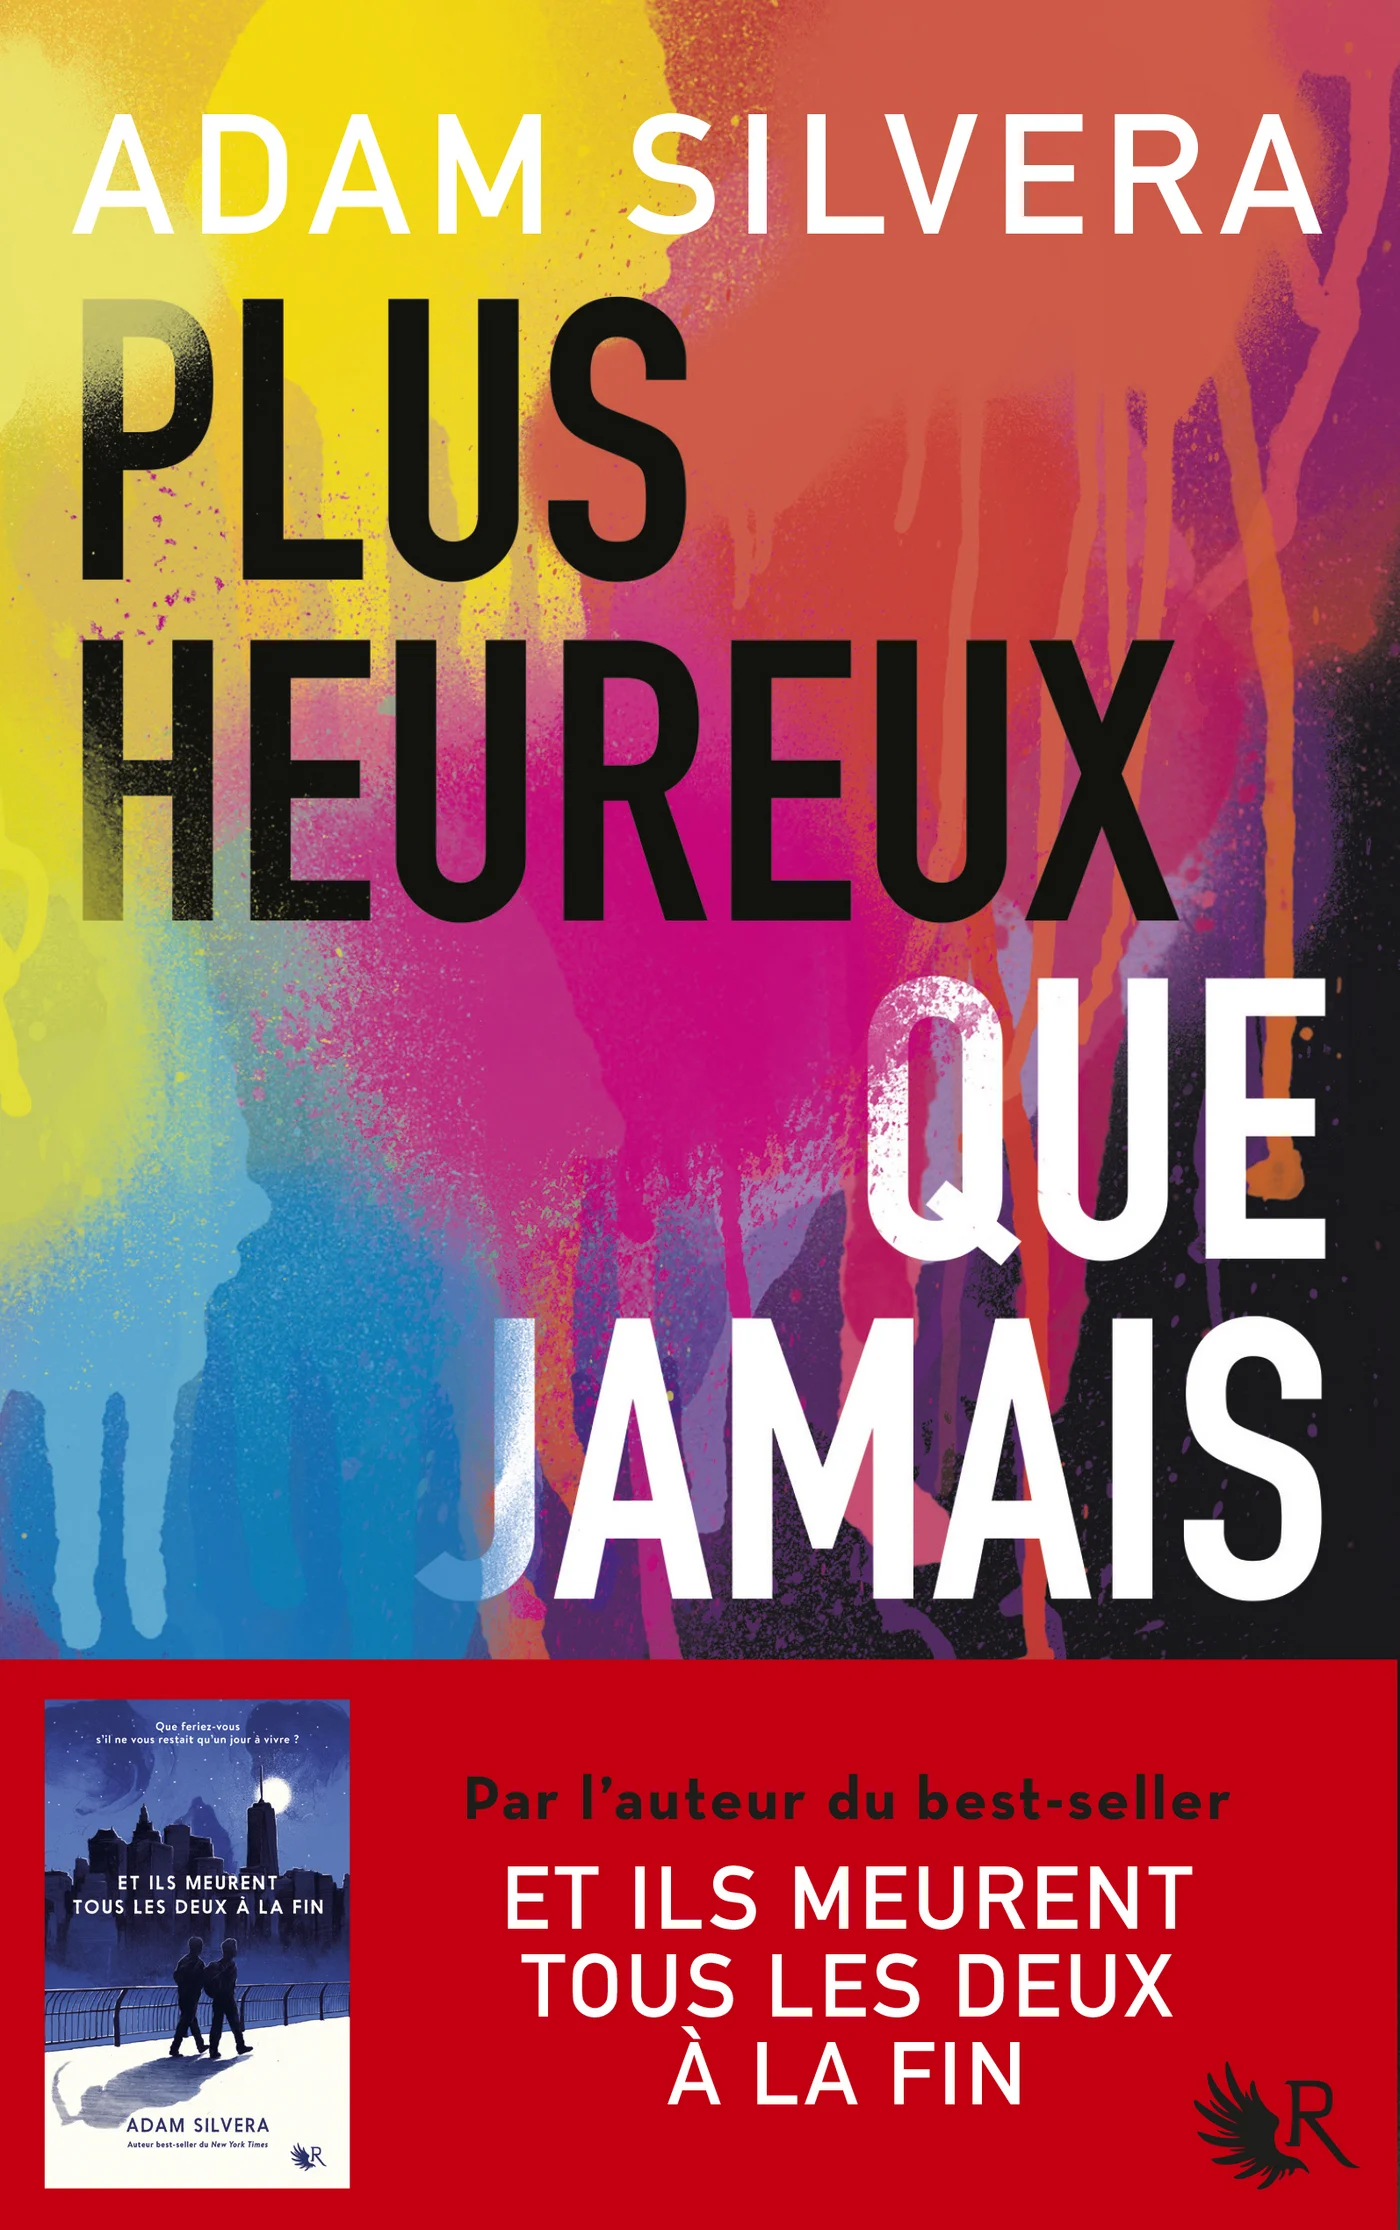 Book cover of PLUS HEUREUX QUE JAMAIS